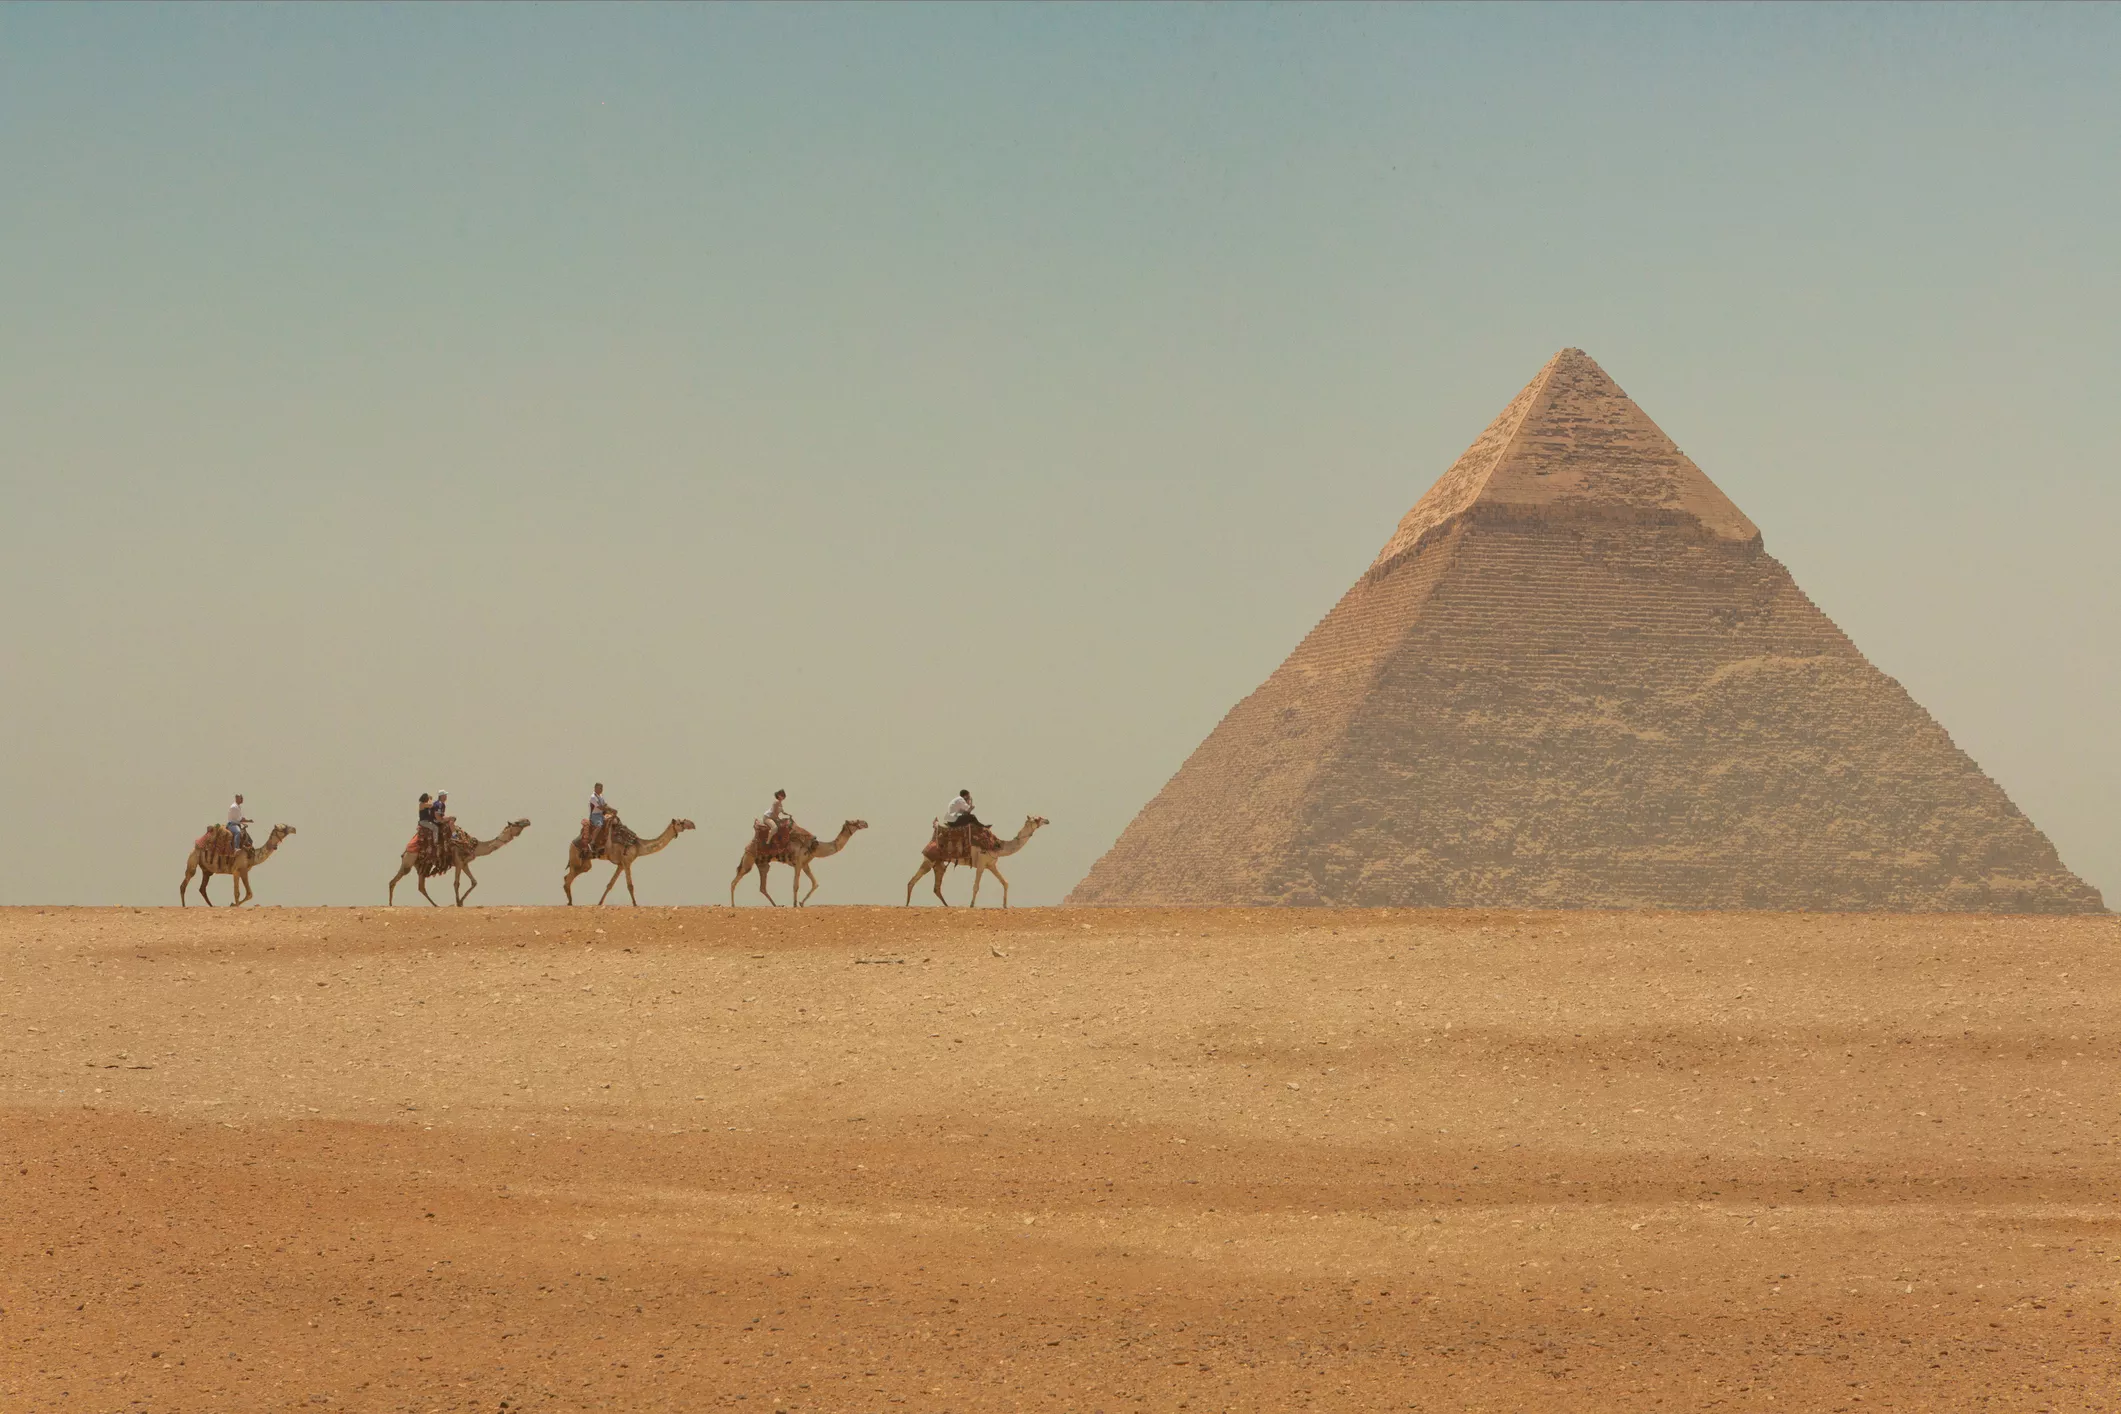 La gran piràmide de Gizeh, l'única de les set meravelles del món antic que queda dempeus